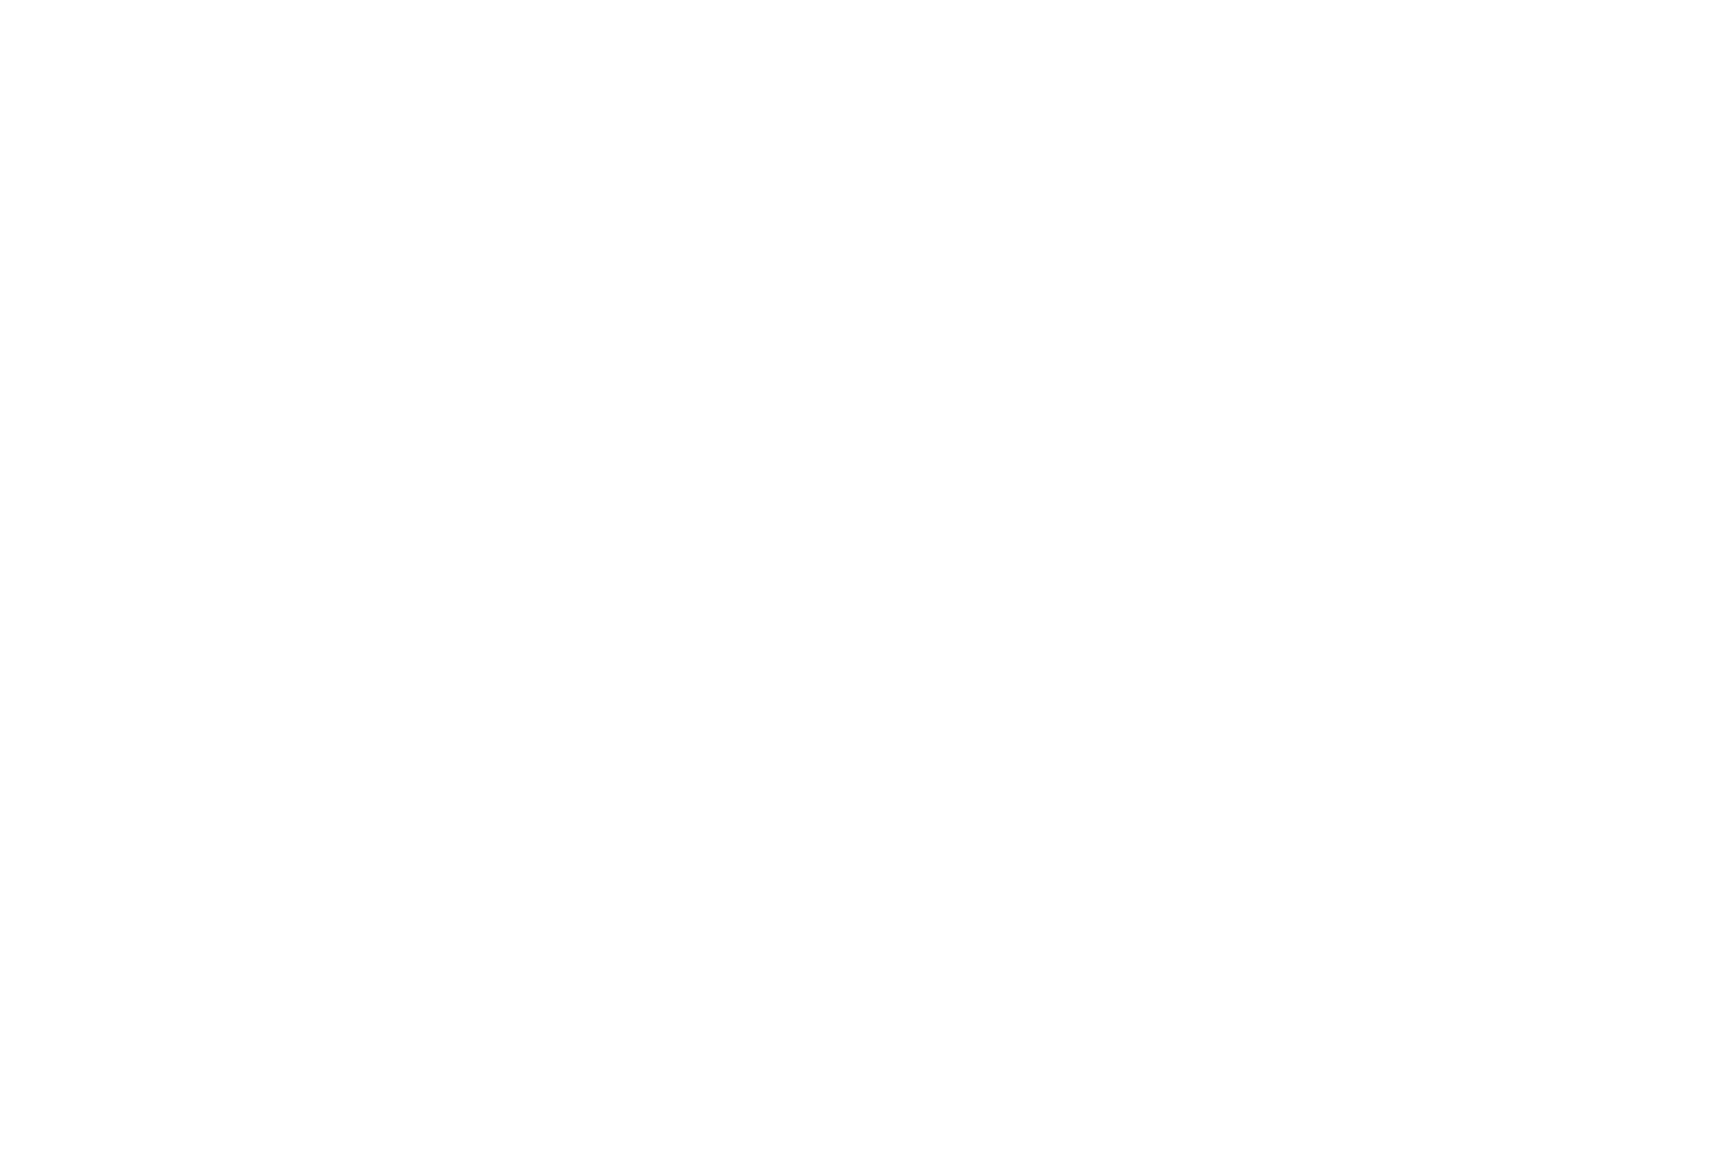 Best Original Music Score - Content Film Festival and Media Summit - 2021